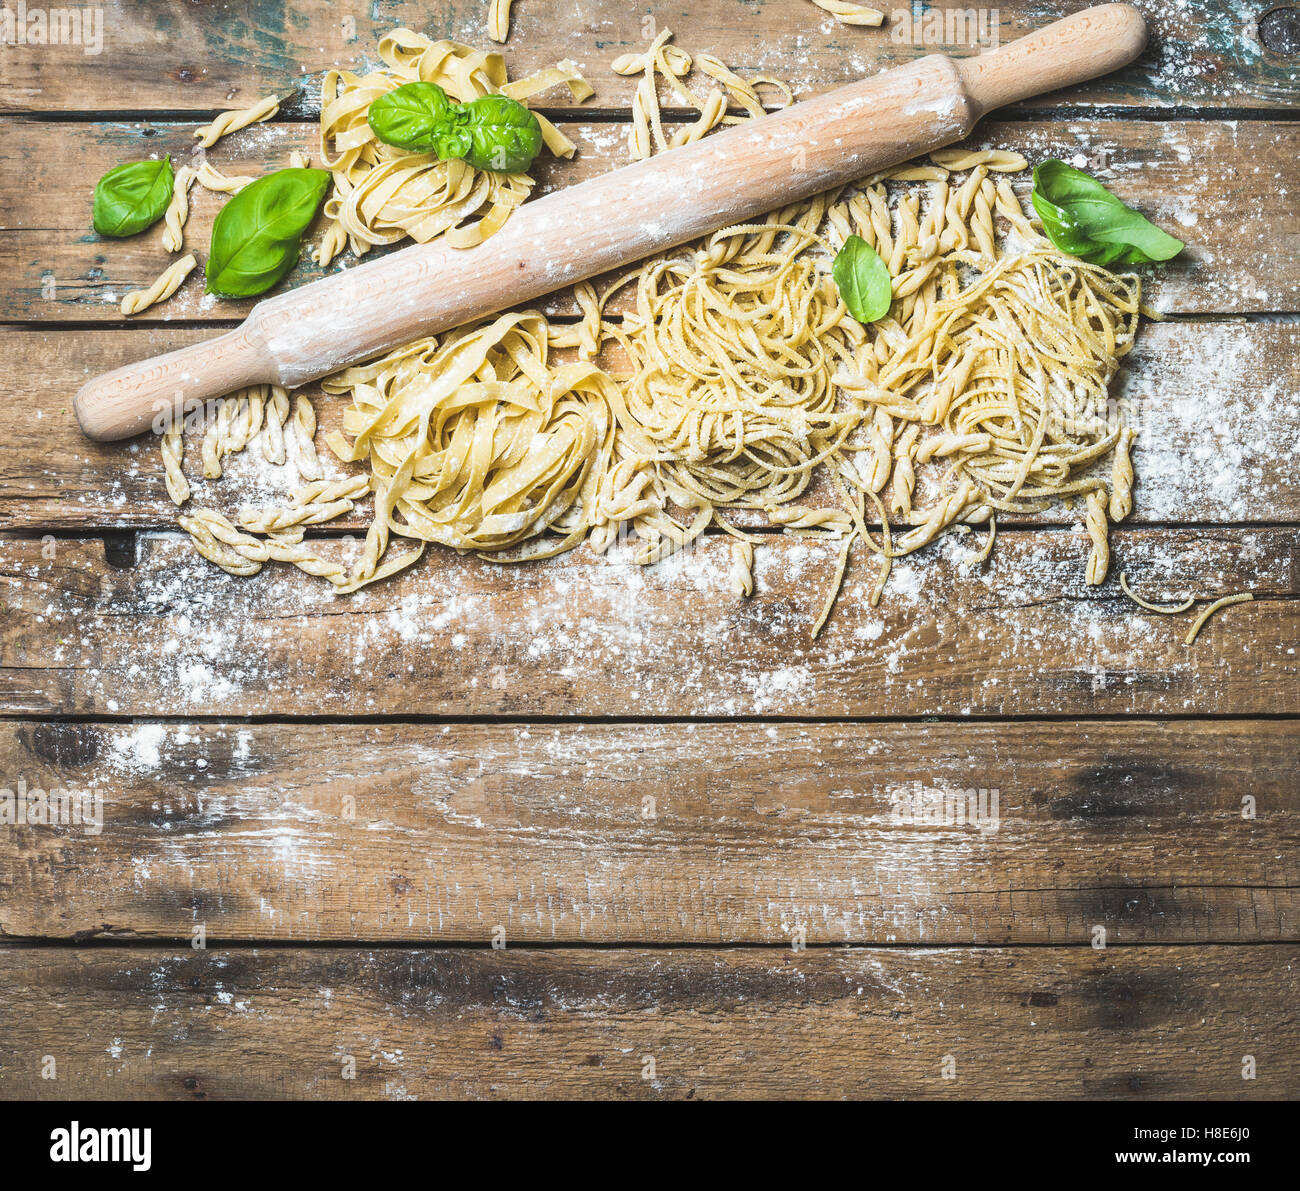 Verschiedene hausgemachte frische italienische Teigwaren mit Mehl, grüne Basilikumblätter und Kolben auf schäbige rustikalen hölzernen Hintergrund, top Stockfoto